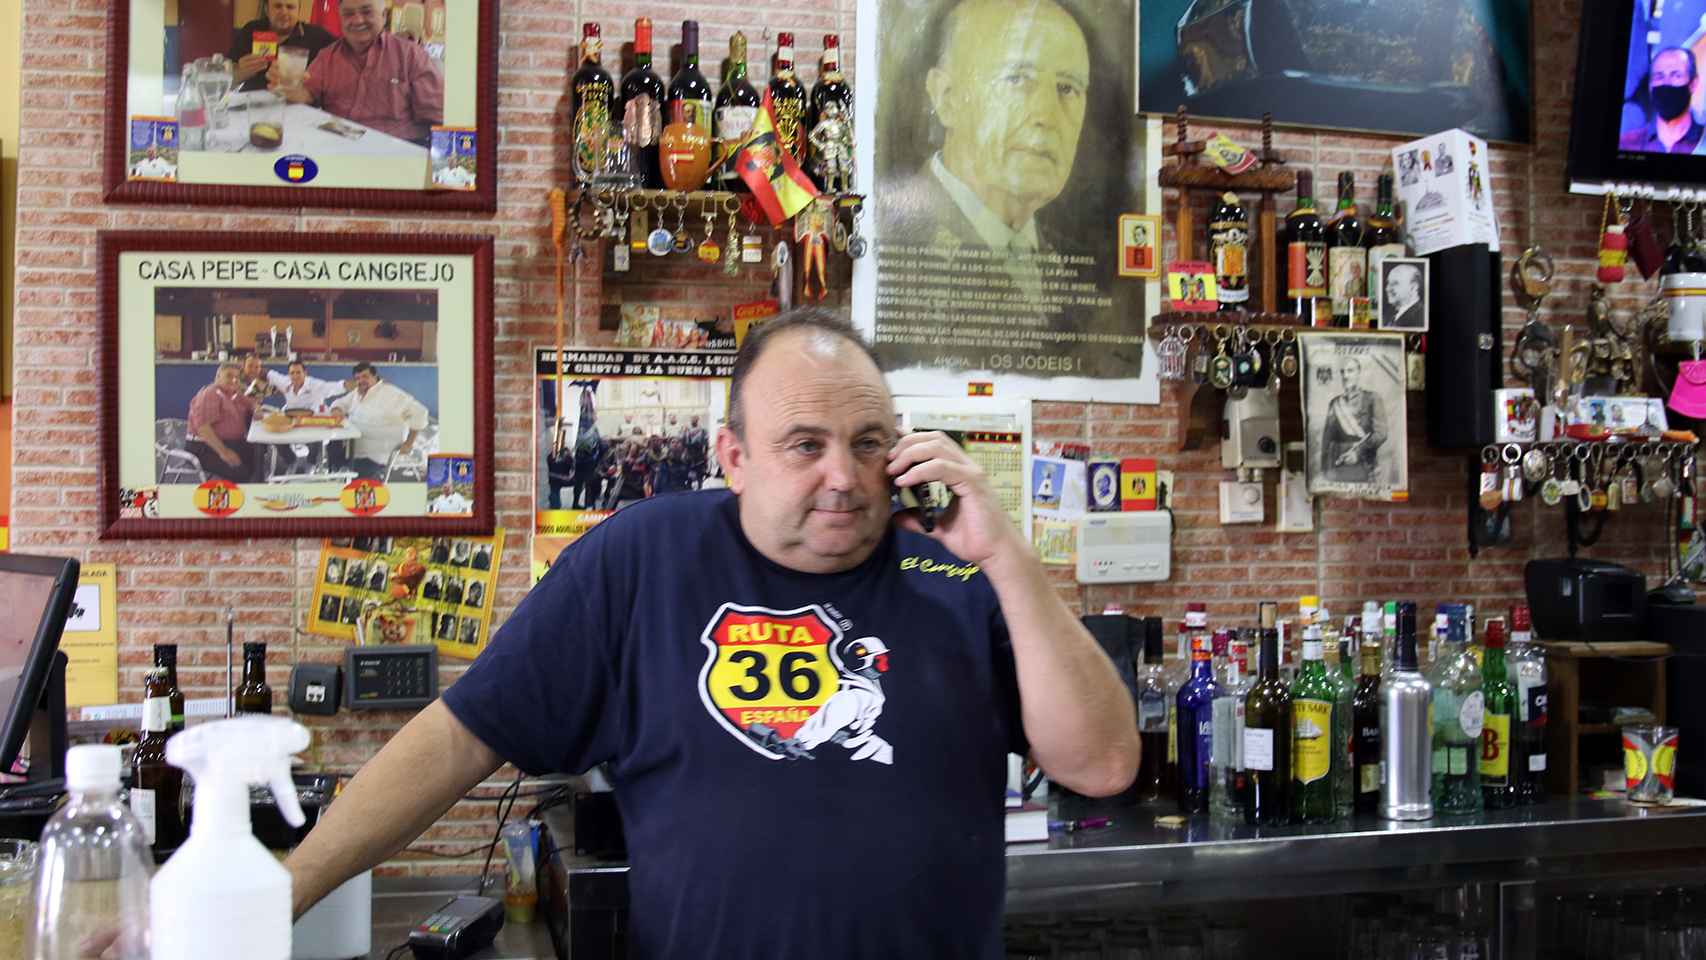 Juan José contesta siempre arriba España, dígame cuando coge el teléfono de su bar.